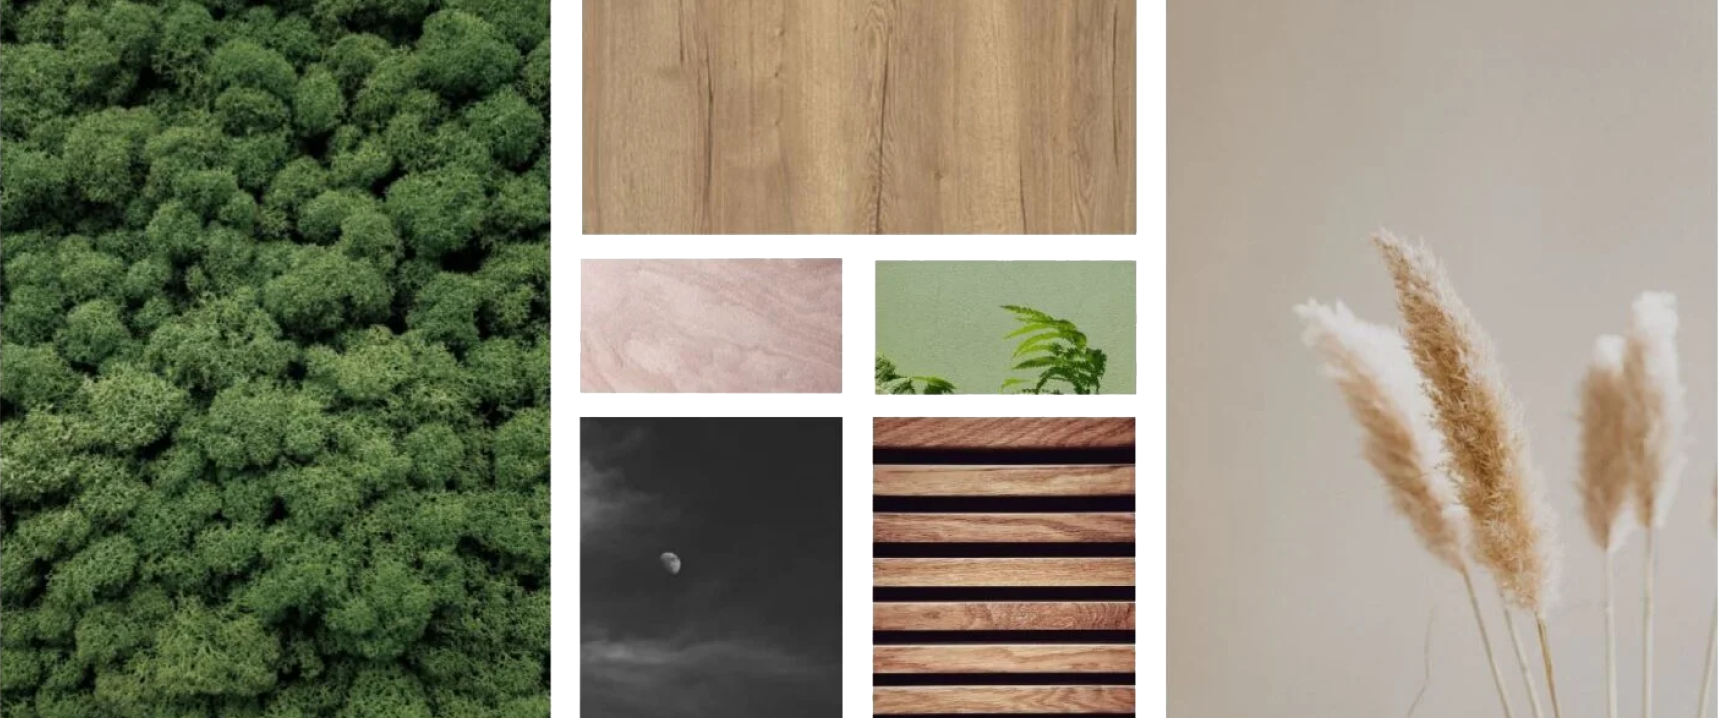 moodboard van kleuren en texturen, mos, hout, planten, pampas gras